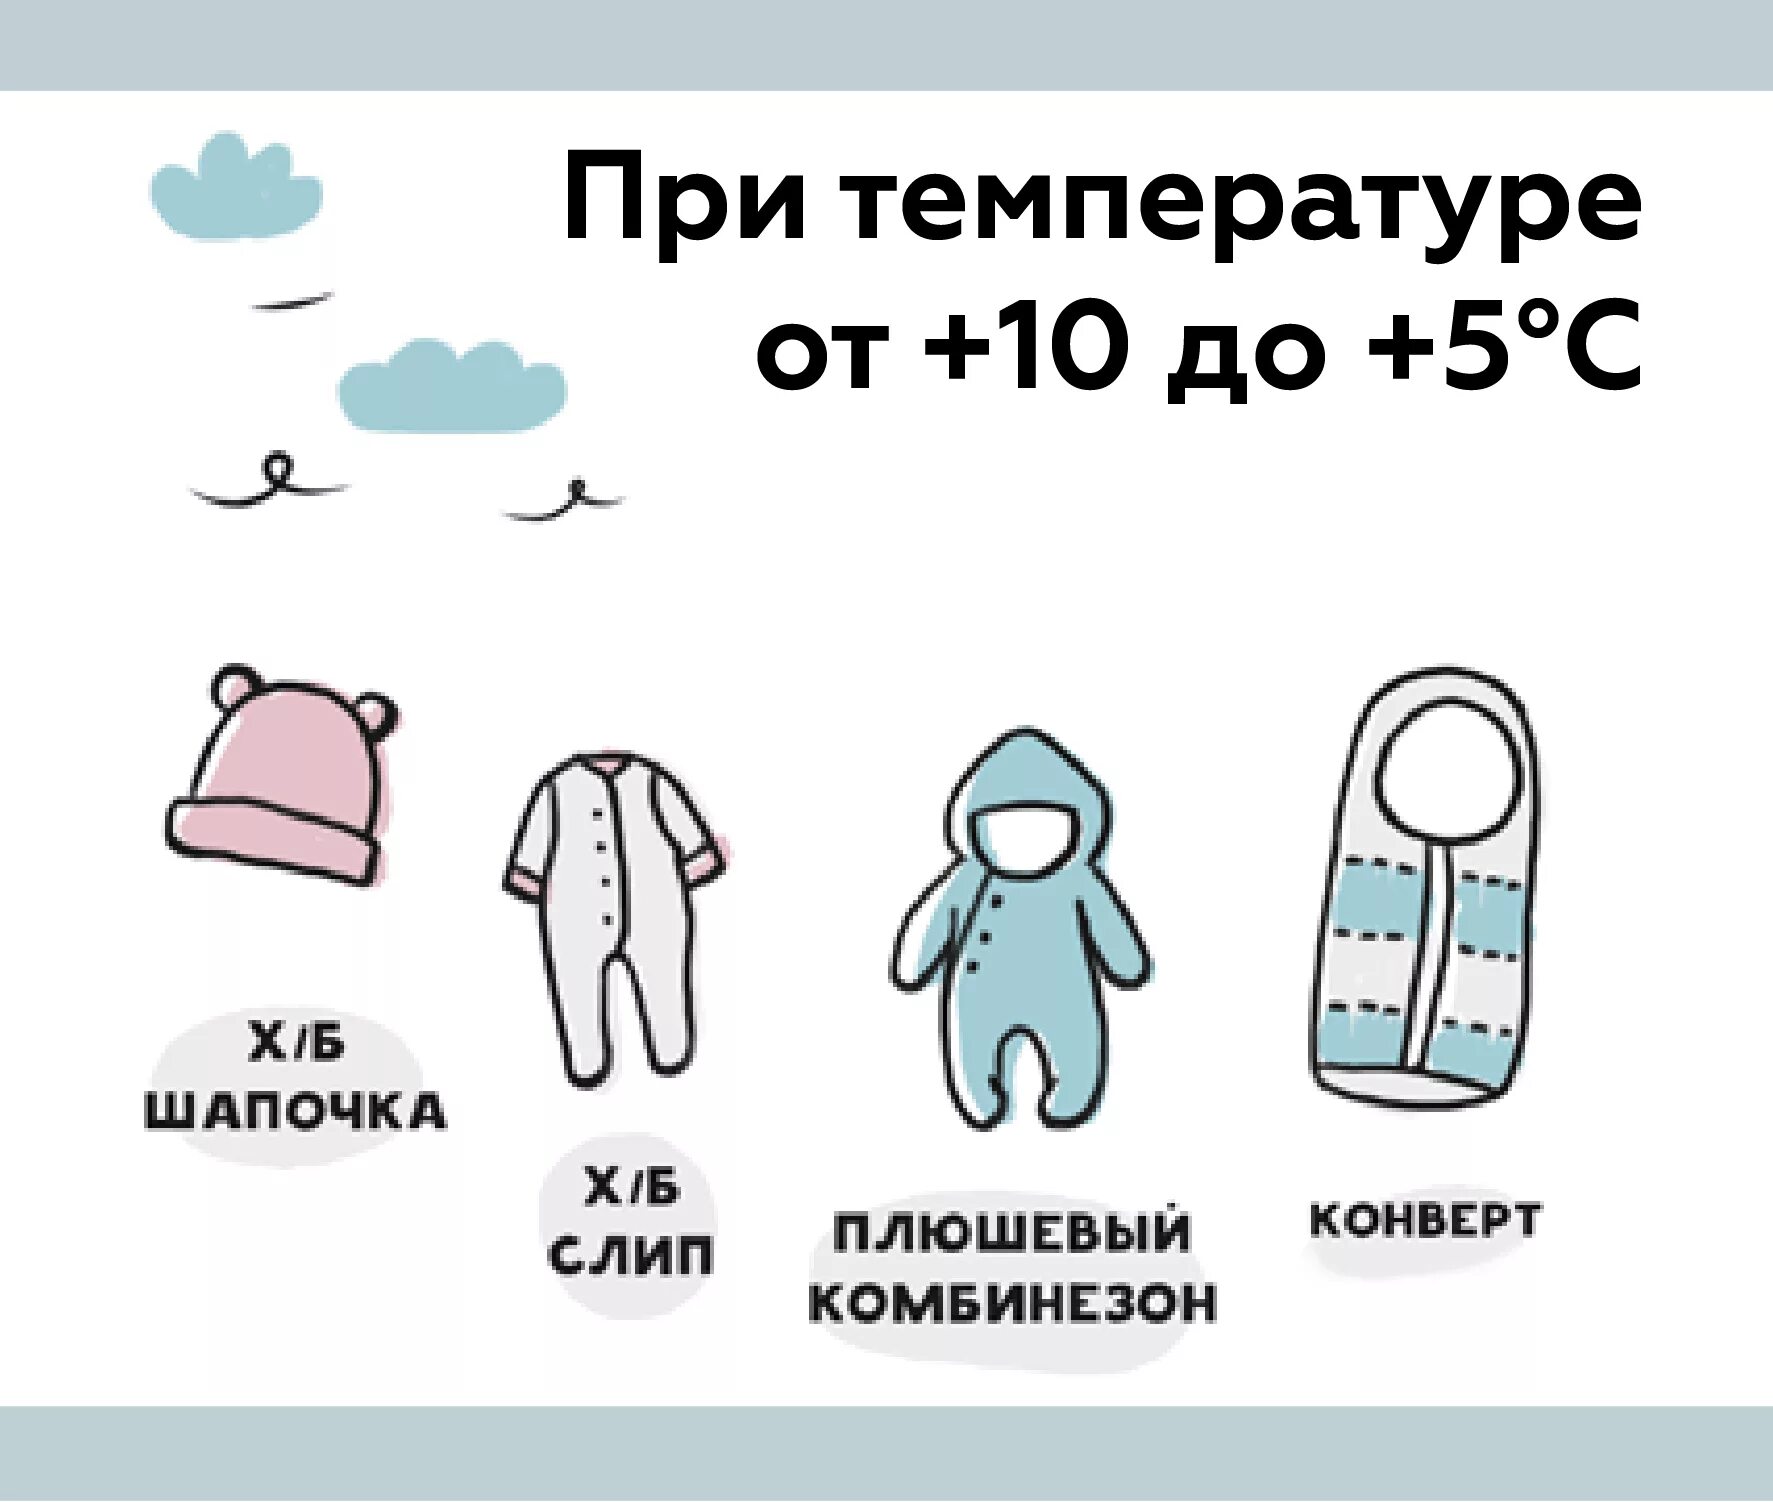 Как одевать годовалого ребенка в 15. Как одеть грудничка на прогулку в +10. Как одевать грудничка на улицу в +10. Как одевать малыша в 10 градусов тепла. Как одевать грудничка в +25 на прогулку.